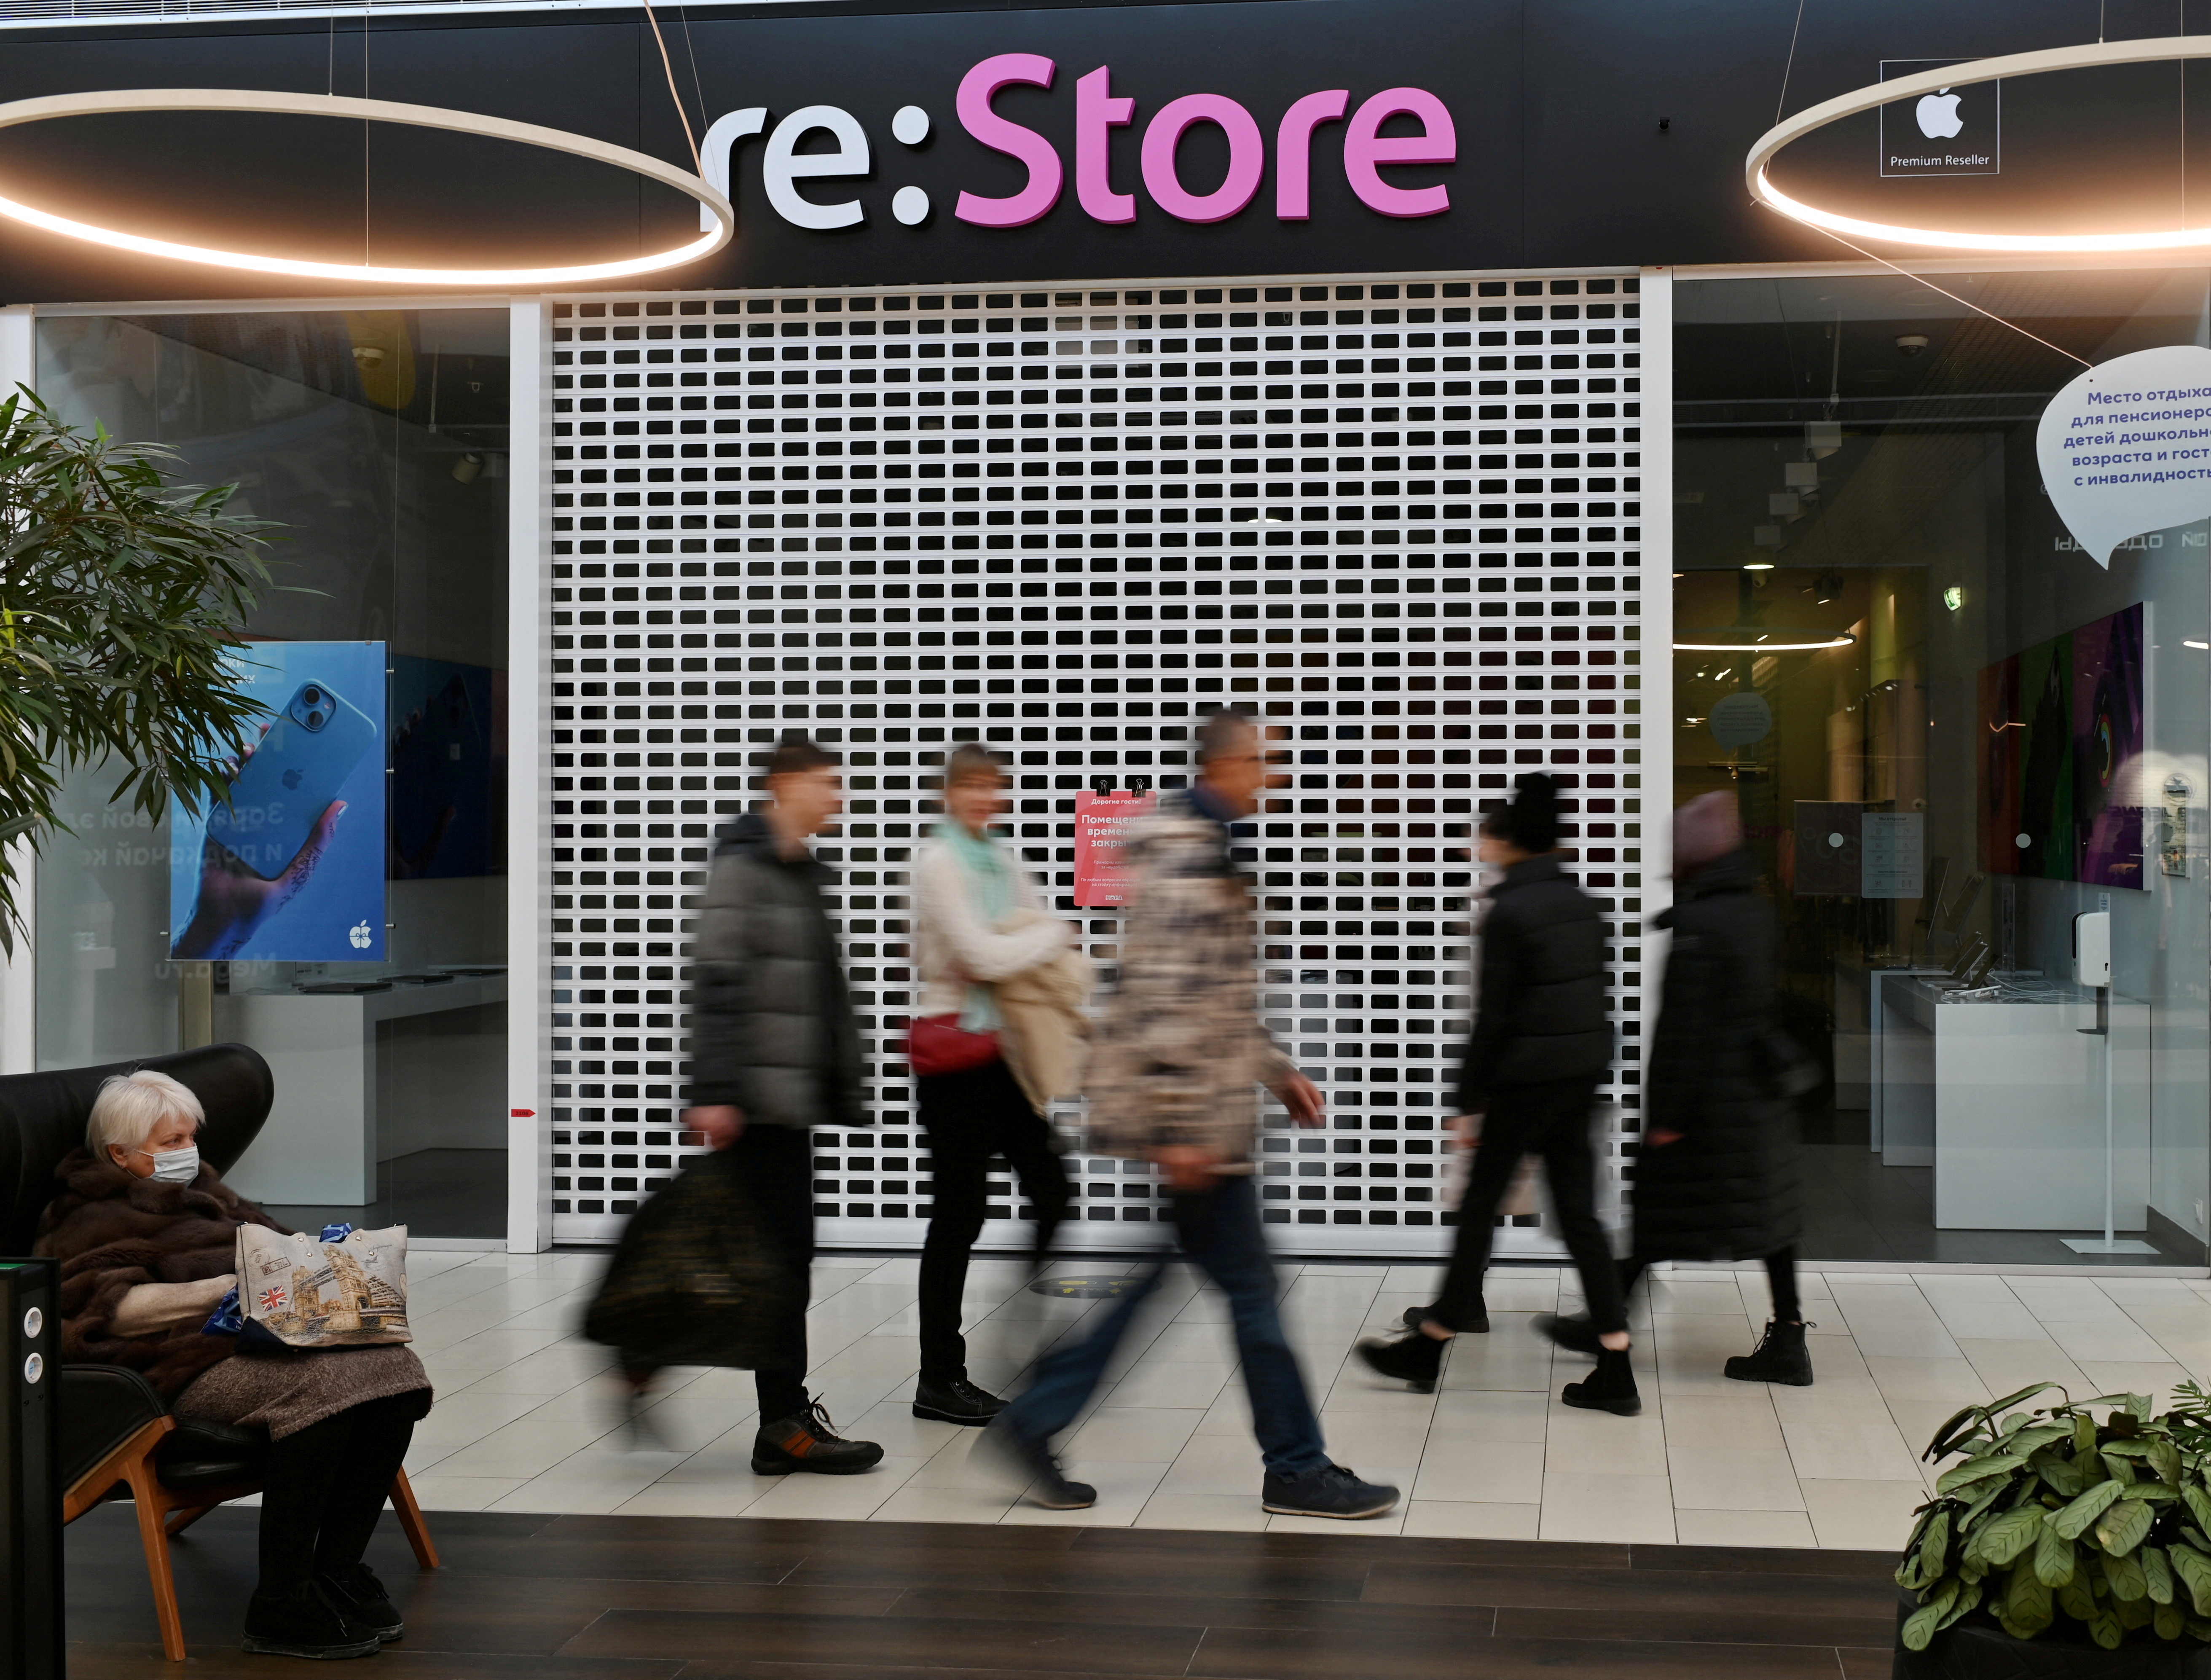 FOTO FILE: Orang-orang berjalan melewati toko Apple "memulihkan" ditutup di sebuah pusat perbelanjaan di Omsk, Rusia, pada 2 Maret 2022. REUTERS/File foto